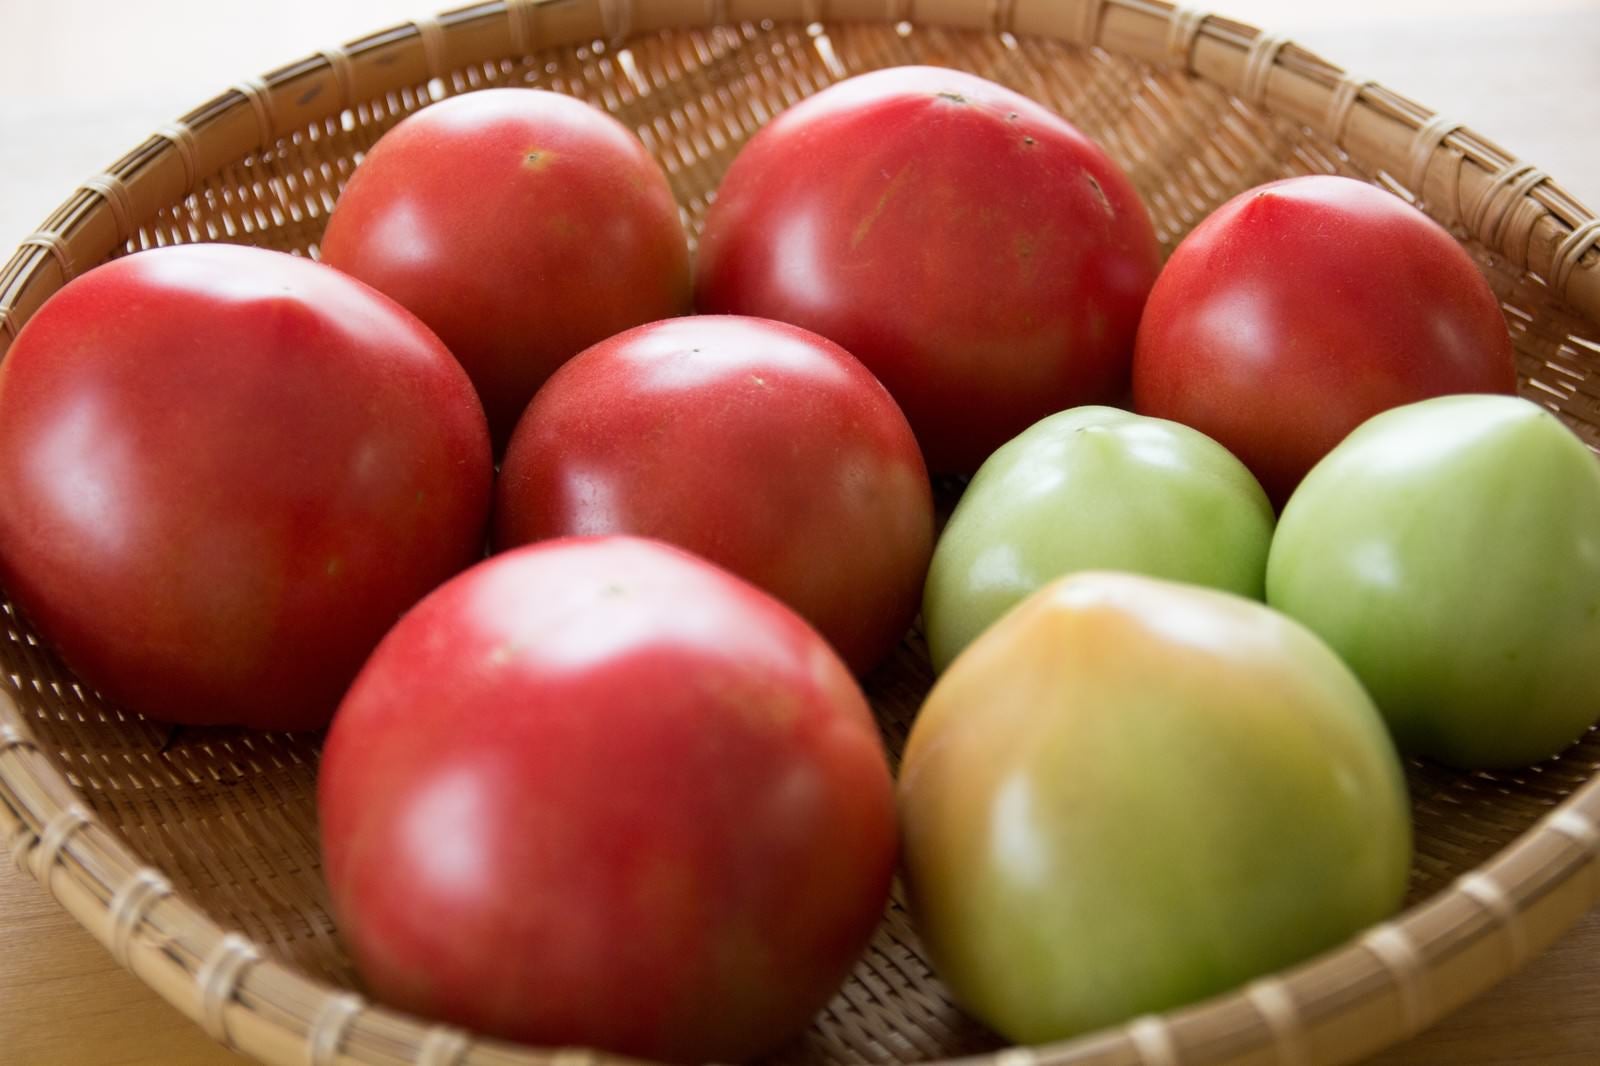 「ザルに入った採れたてのトマト」の写真